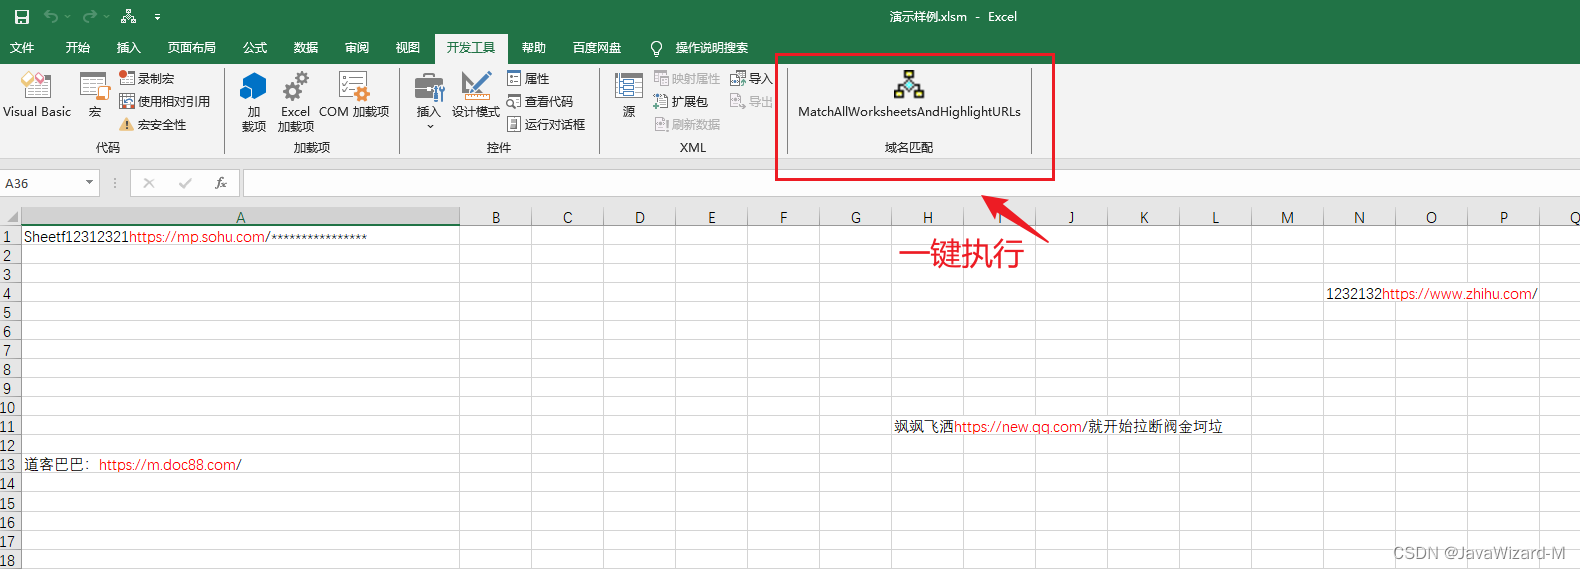 Excel宏标记在所有工作表中标记关键字(以域名为例)并将结果输出到另一张Sheet